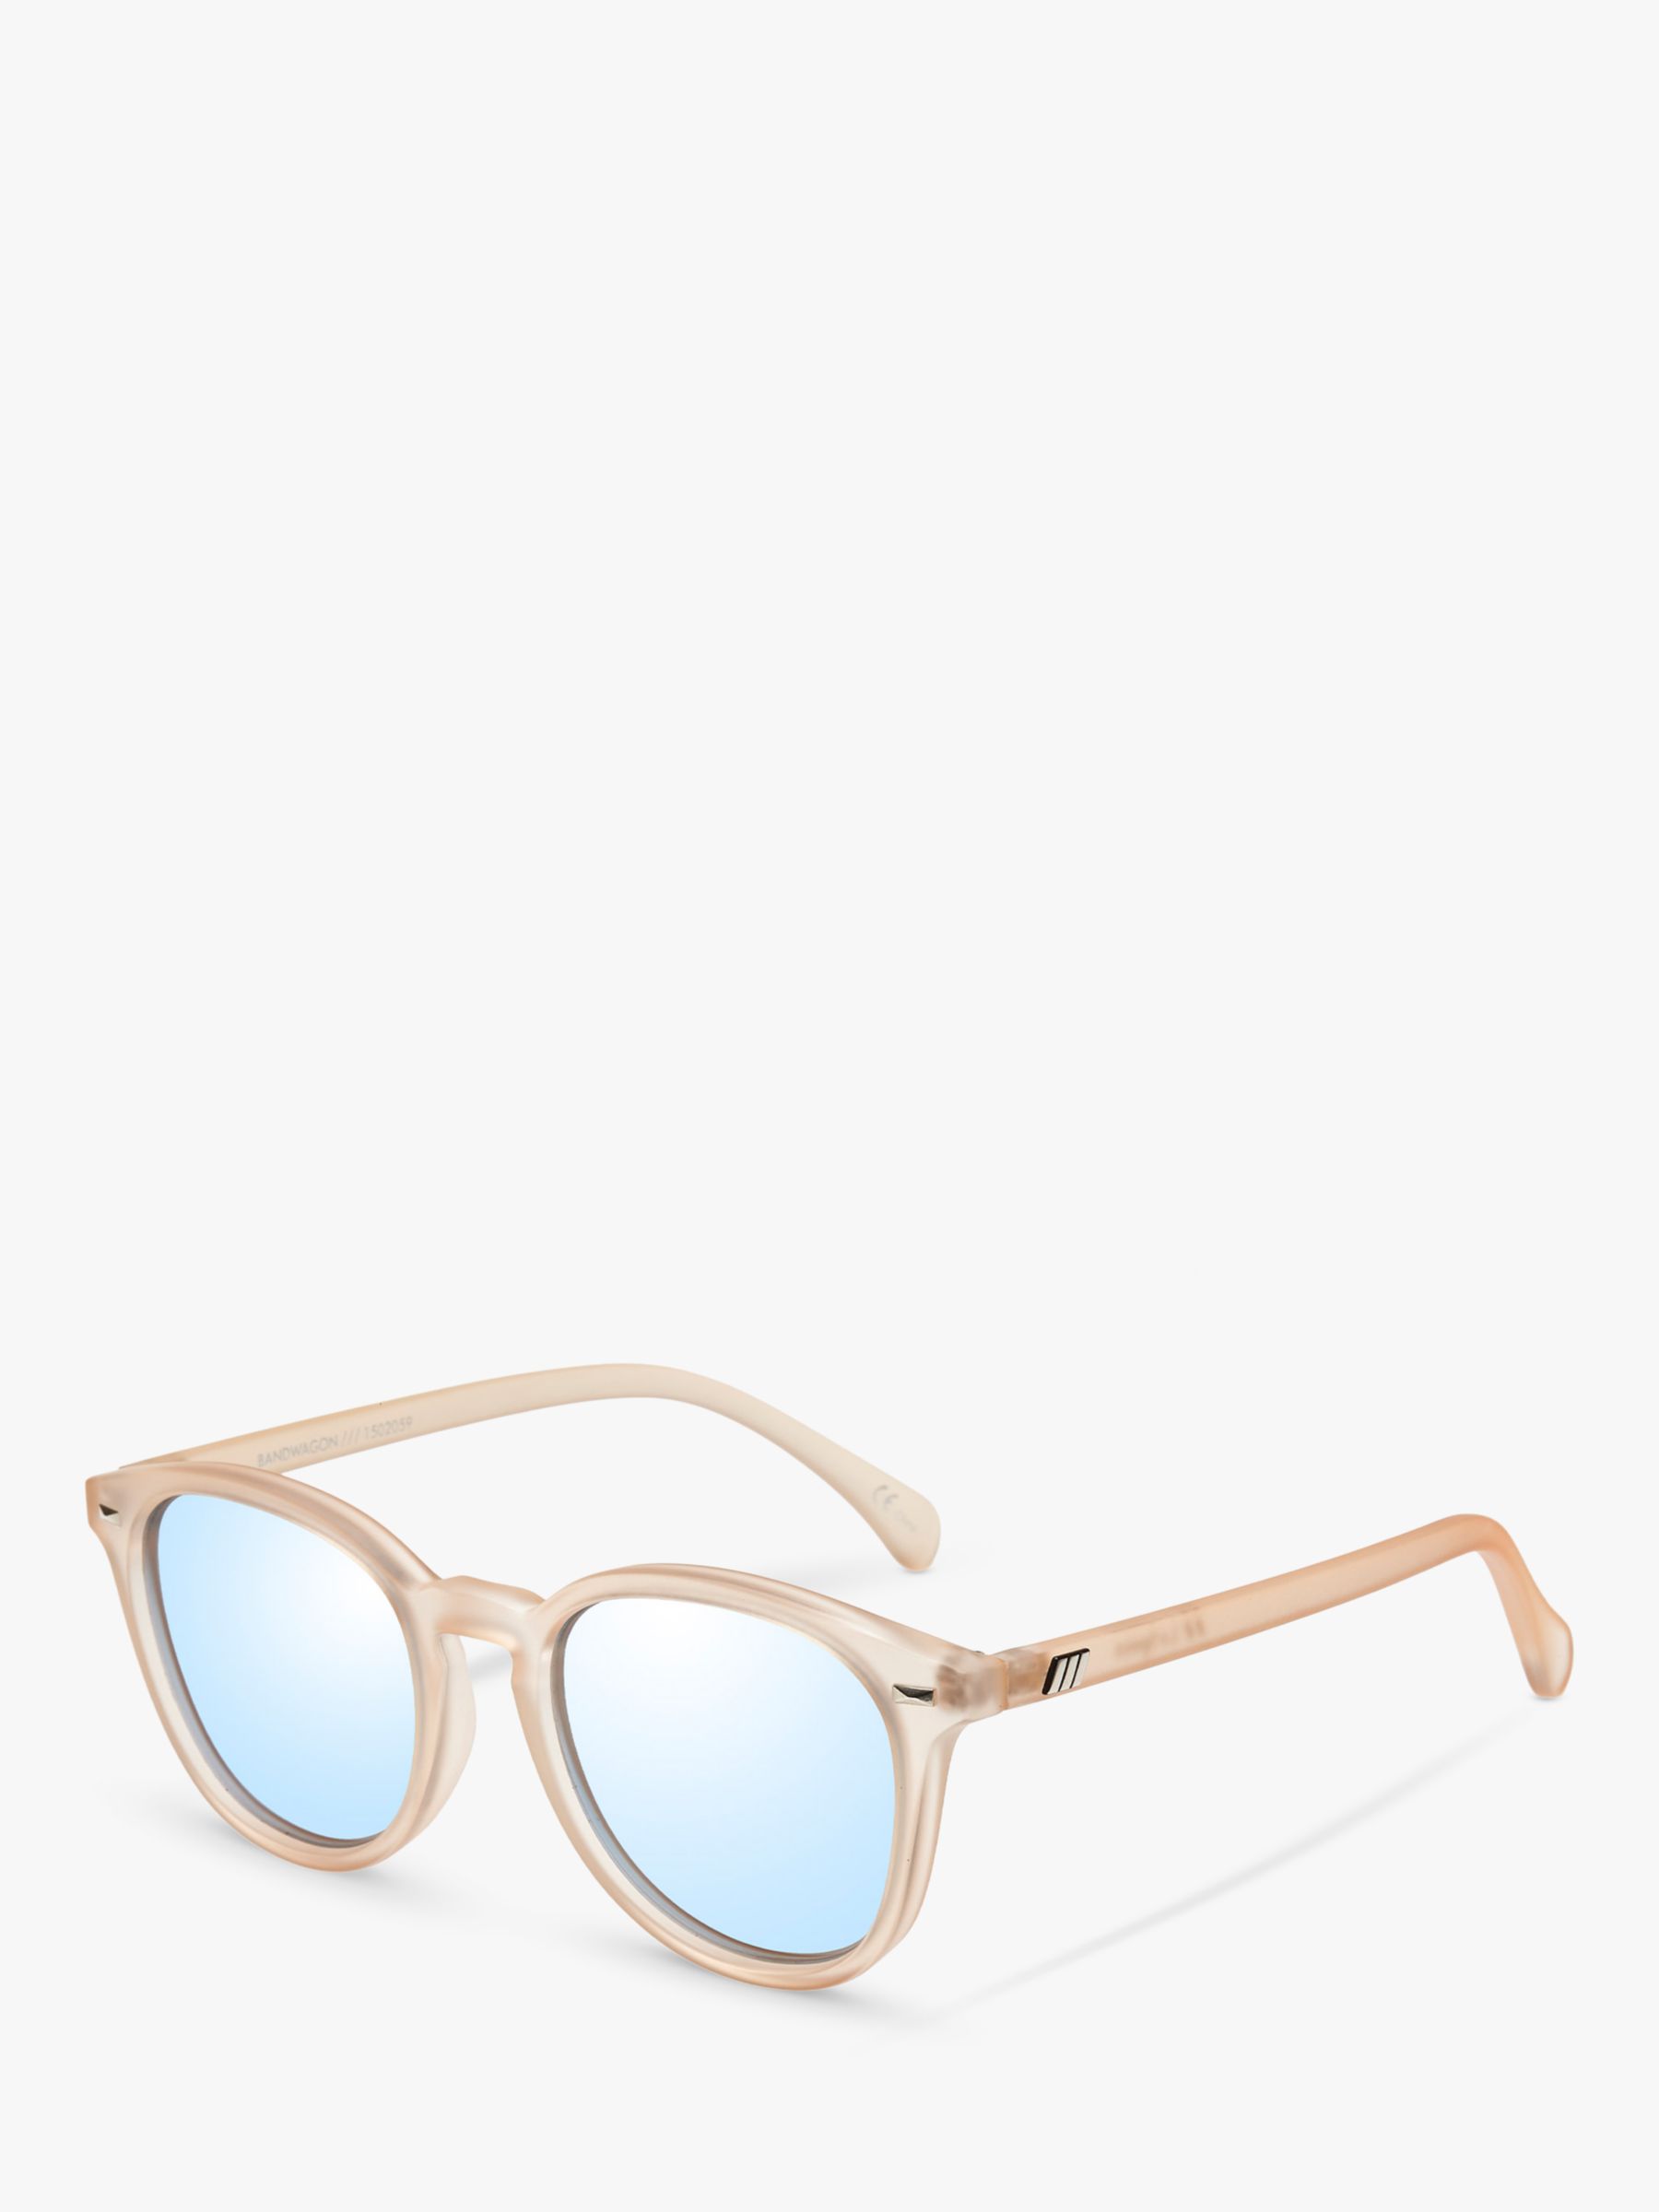 цена Круглые солнцезащитные очки унисекс Bandwagon Le Specs, тан/зеркальный синий l5000144